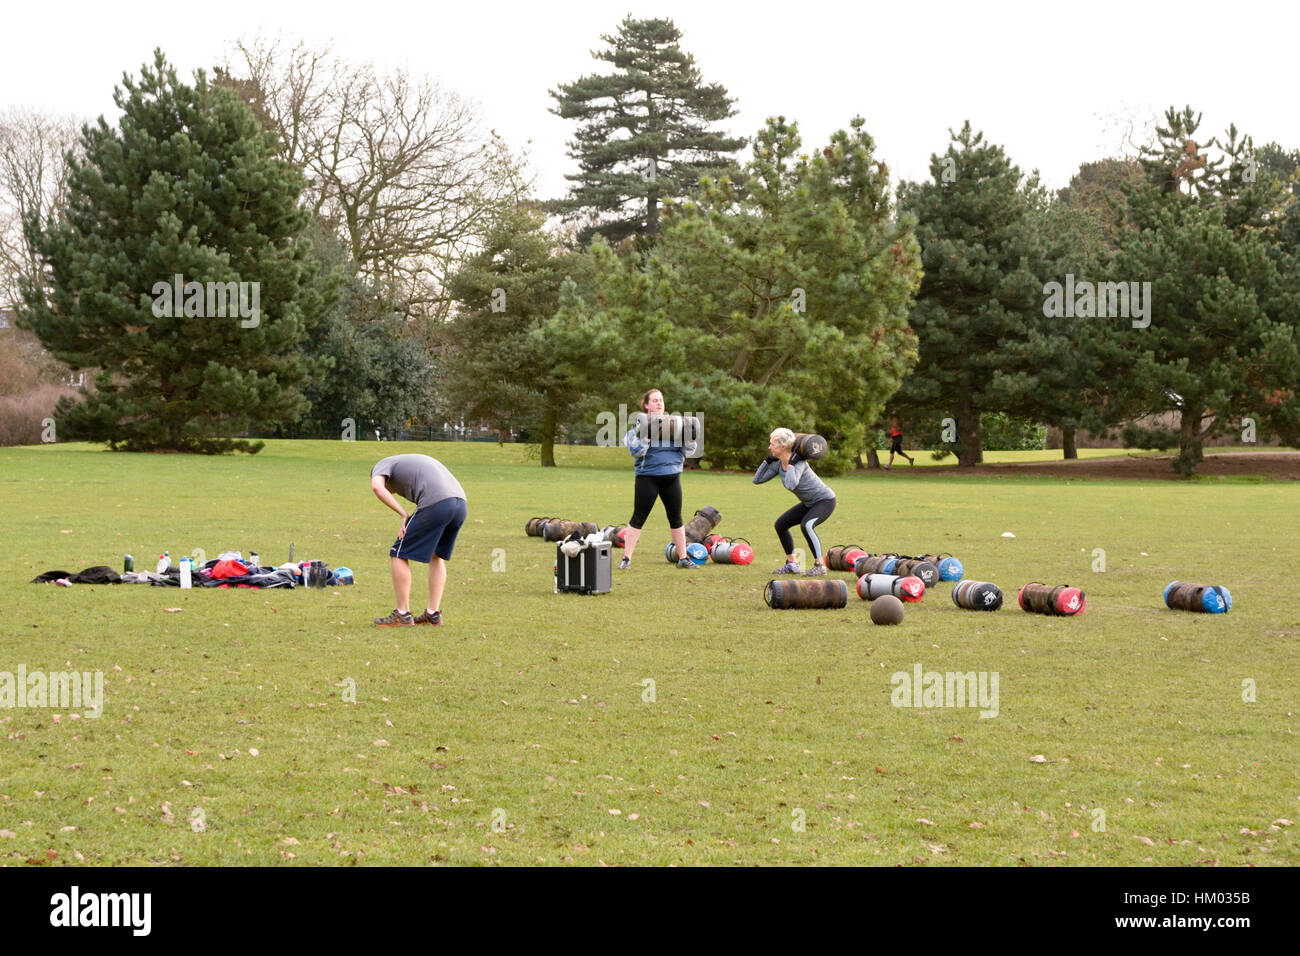 La force de la forme physique avec beaucoup de classe en circuit dans le Russell Park, Bedford, Bedfordshire, Angleterre Banque D'Images